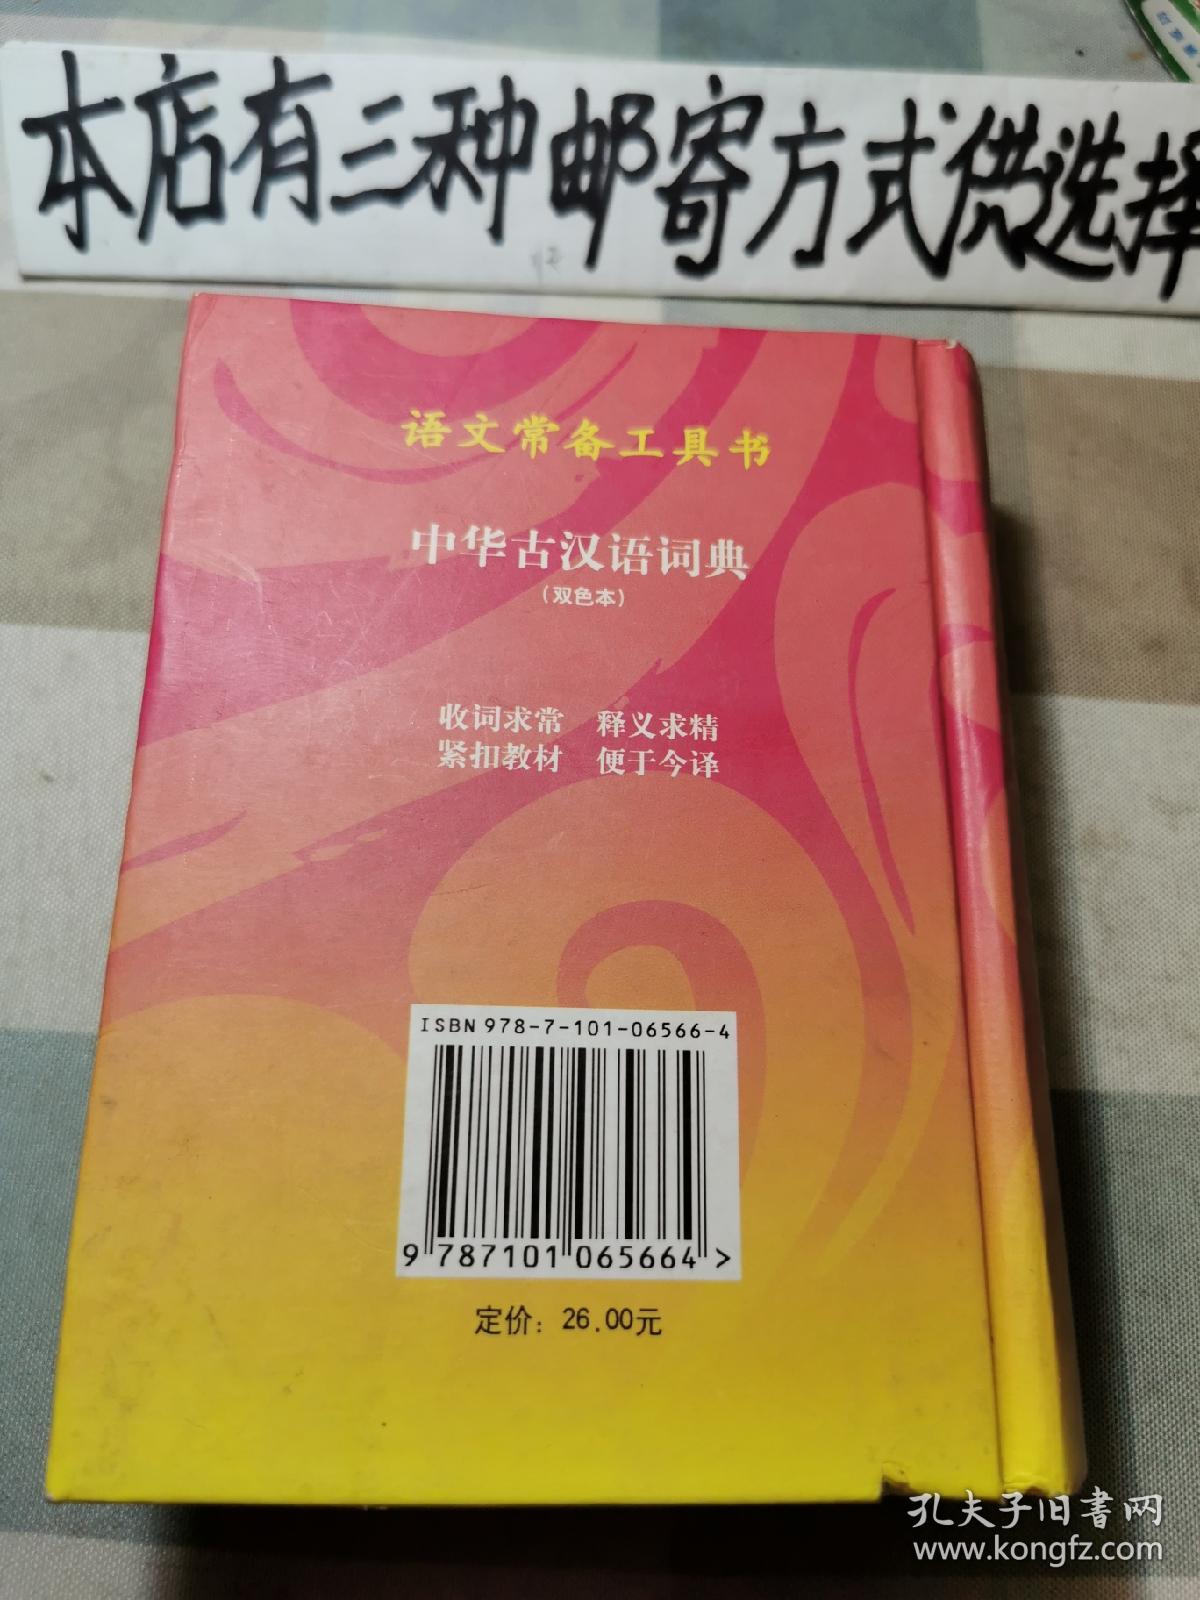 中华古汉语词典（精装双色本）16开（存1-3-2